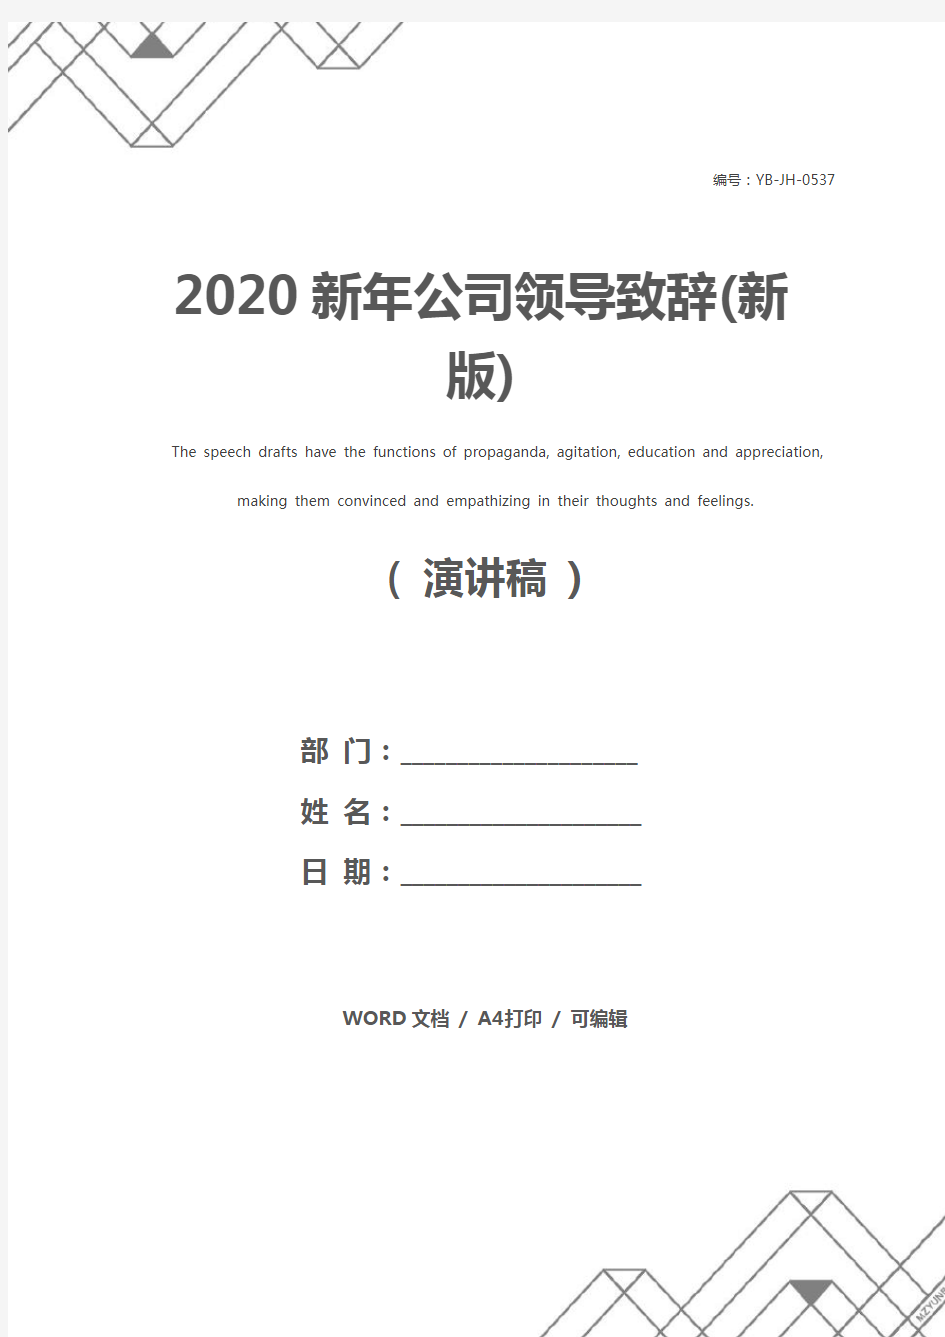 2020新年公司领导致辞(新版)